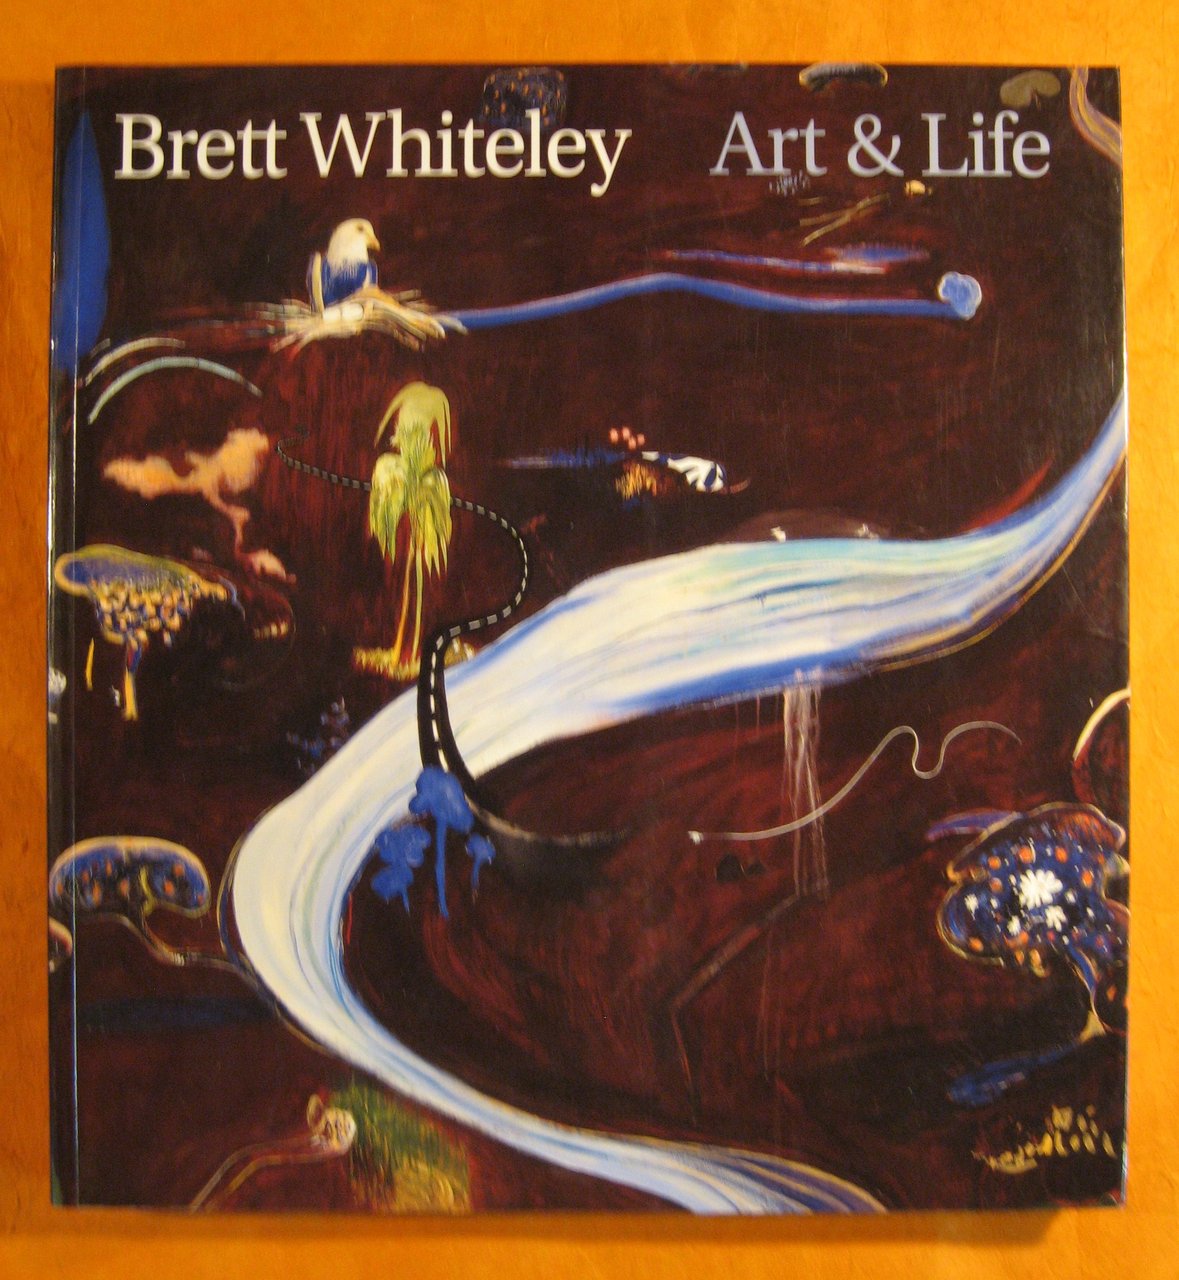 Brett Whiteley: Art & life